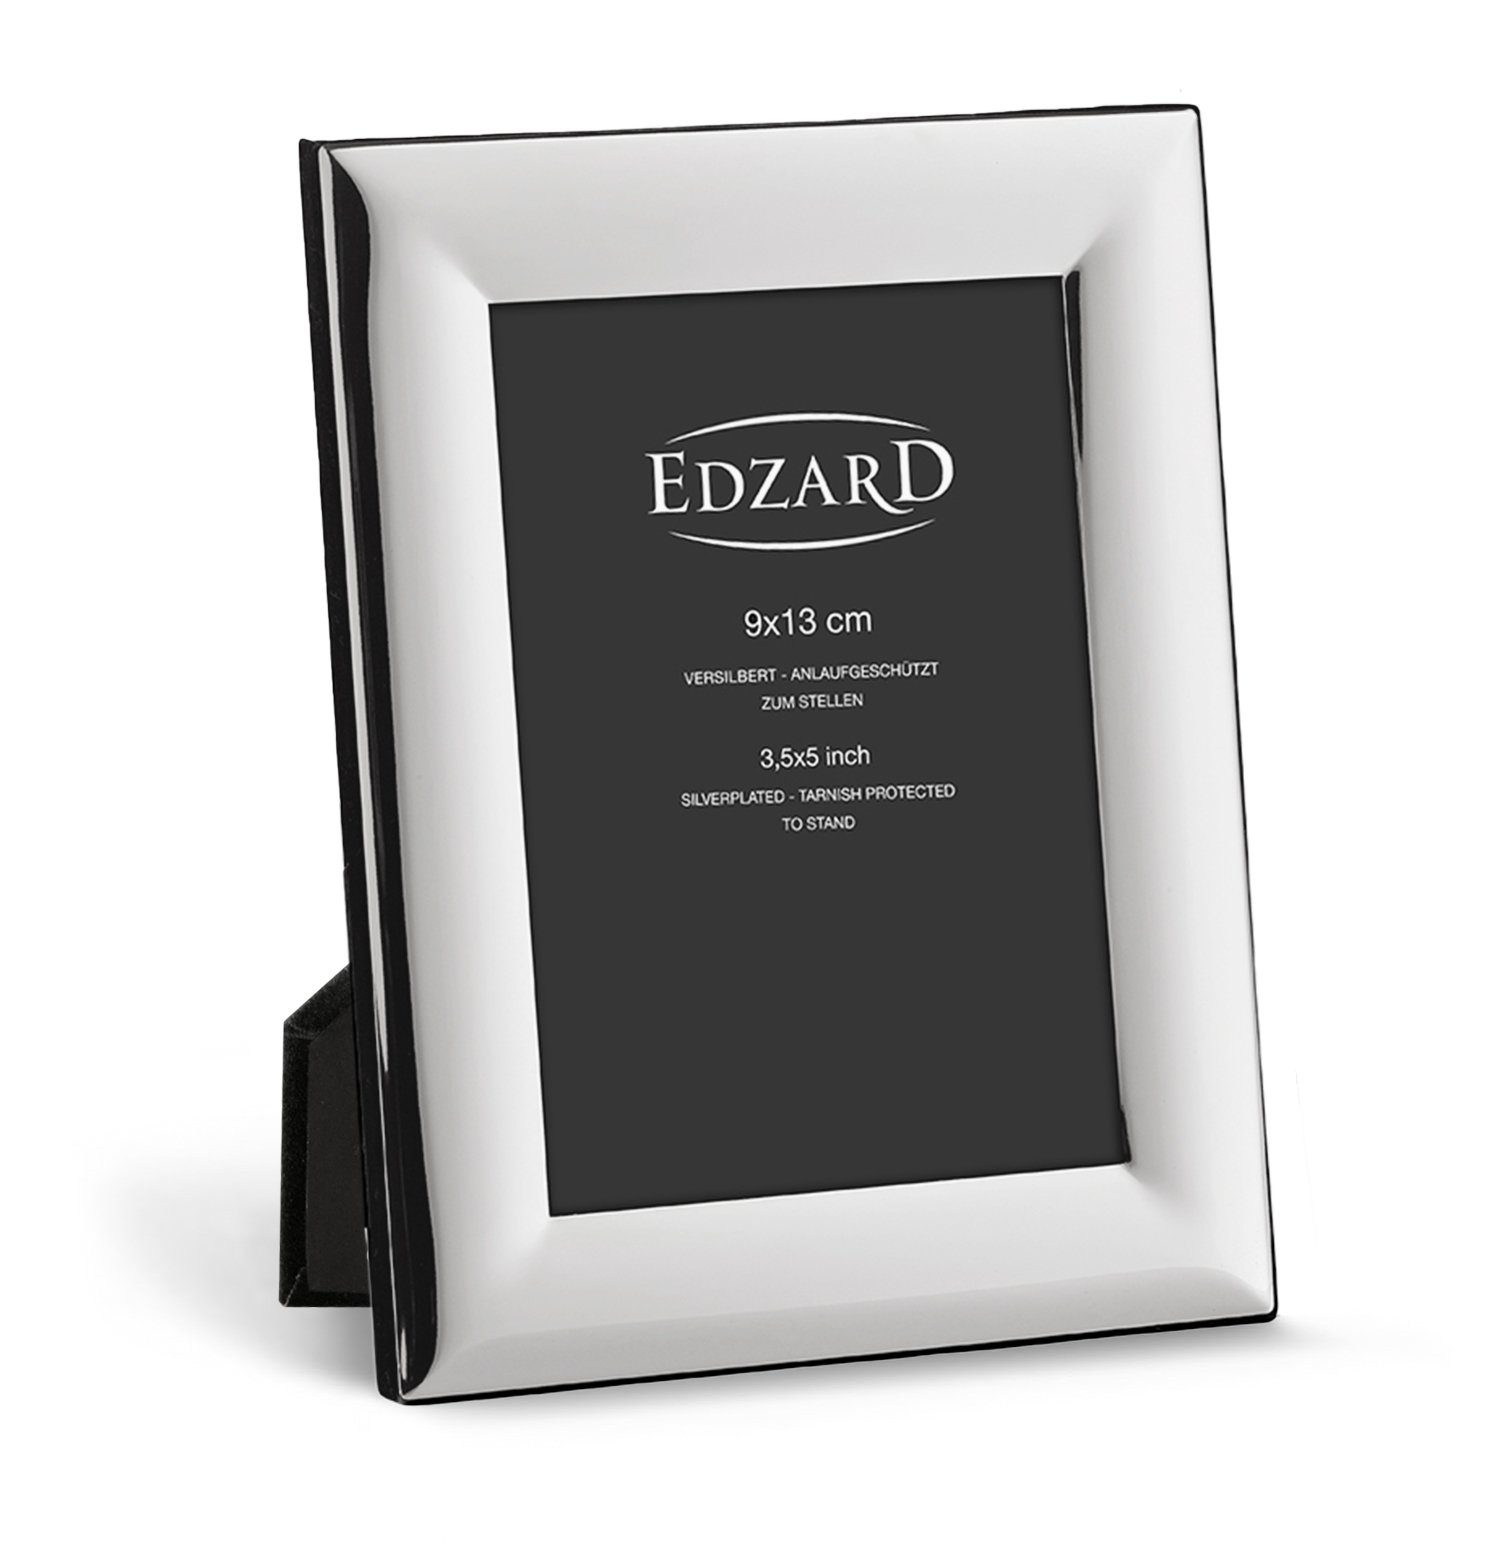 EDZARD Bilderrahmen für versilbert 9x13 anlaufgeschützt, und Gela, cm Foto